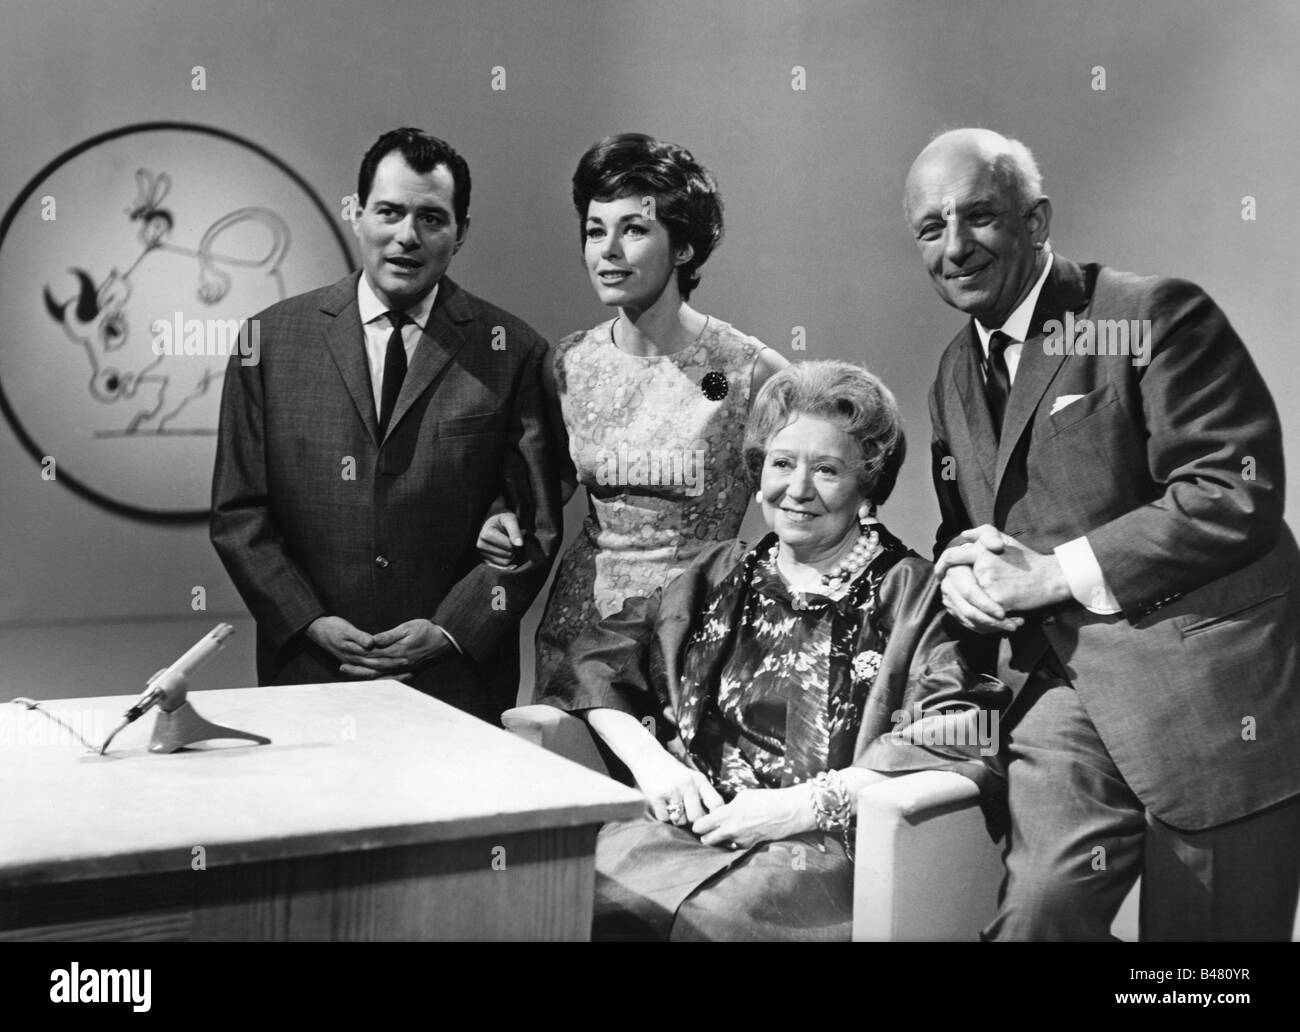 Koch, Marianne, * 19.8.1931, actrice allemande, demi-longueur, avec Sammy Drechsel, Gertrud 'Trude' Hesterberg et Werner Finck, émission de télévision 'Seht's in den Sternen', SWF, 13.5.1964, Banque D'Images